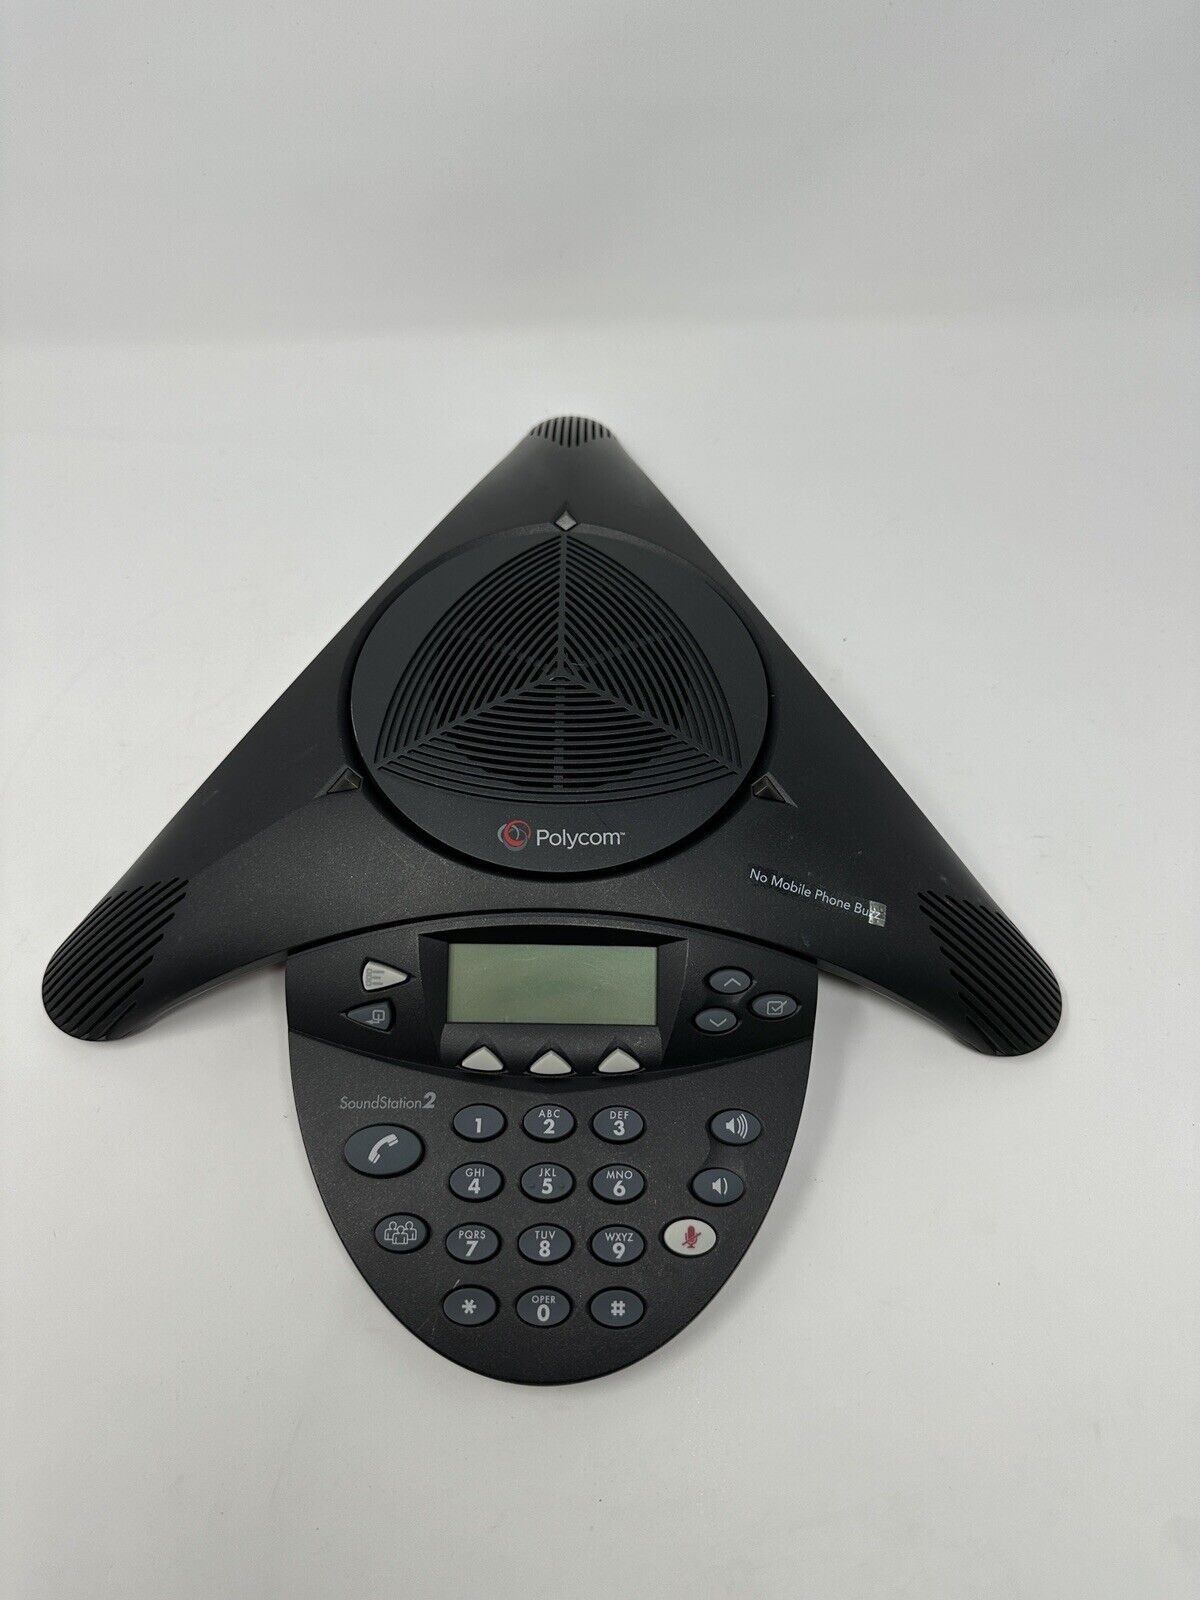 Polycom SoundStation 2 2201-16200-601 Conference Phone System Unit Only